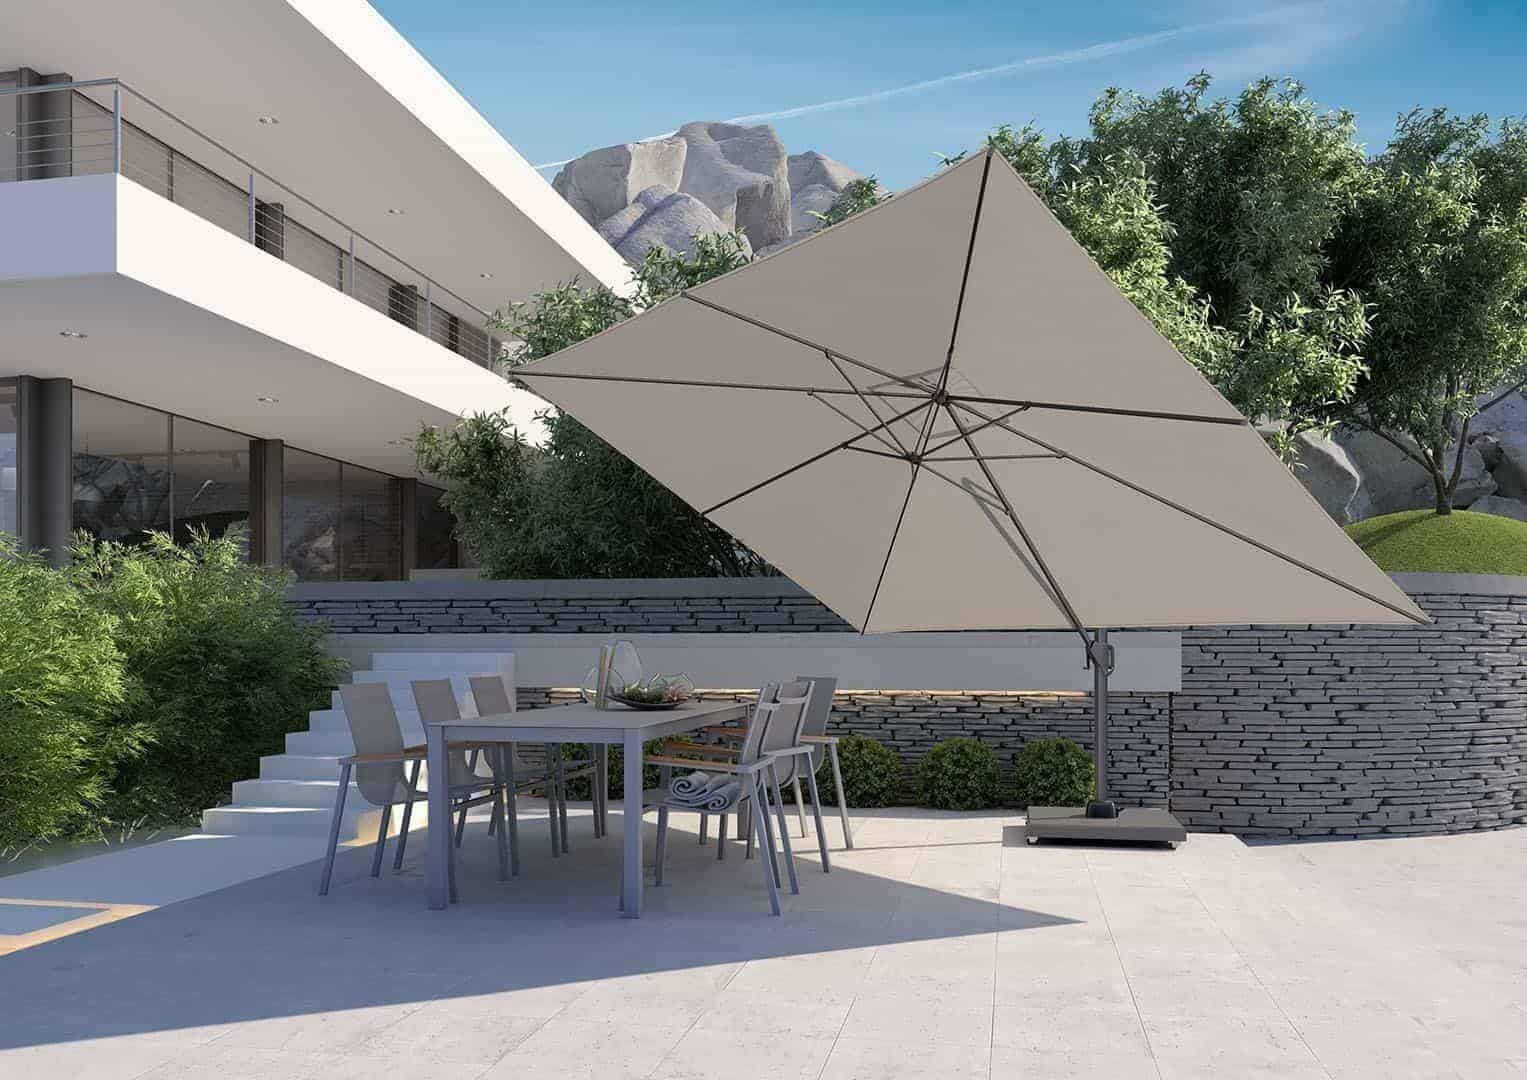 Parasol ogrodowy 3x4 - idealne rozwiązanie dla przestronnej i stylowej ochrony przed słońcem